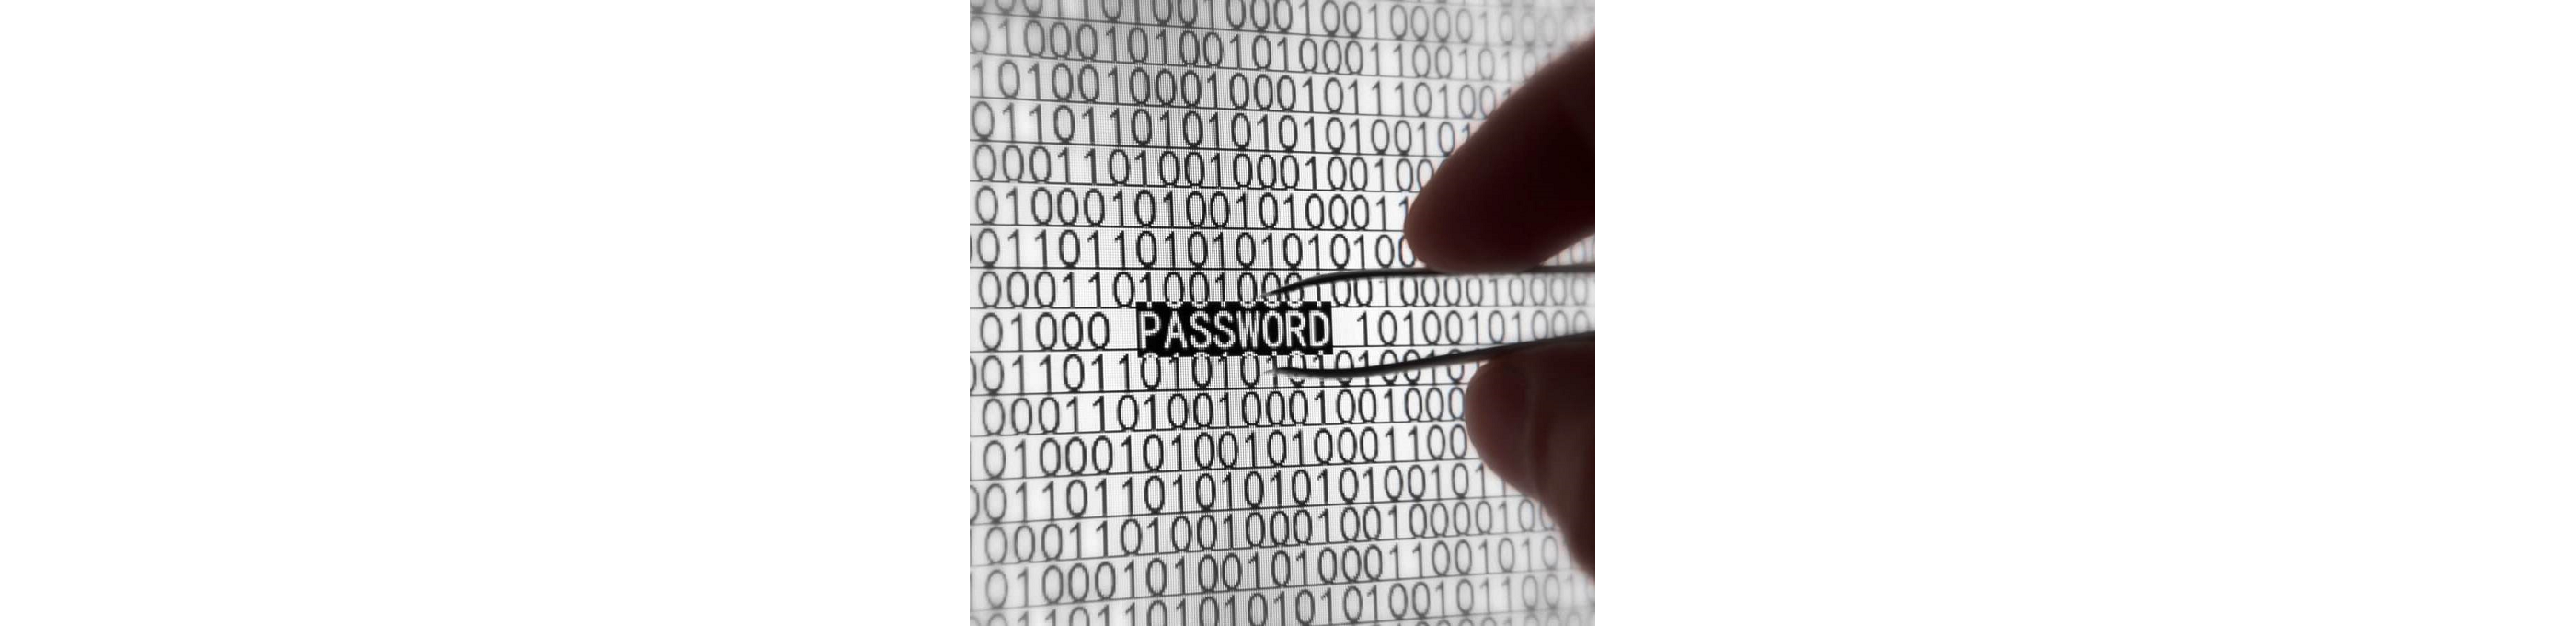 Специалистами по кибербезопаности в Великобритании был составлен список самым распространенных паролей, которые используют пользователи для защиты своих данных